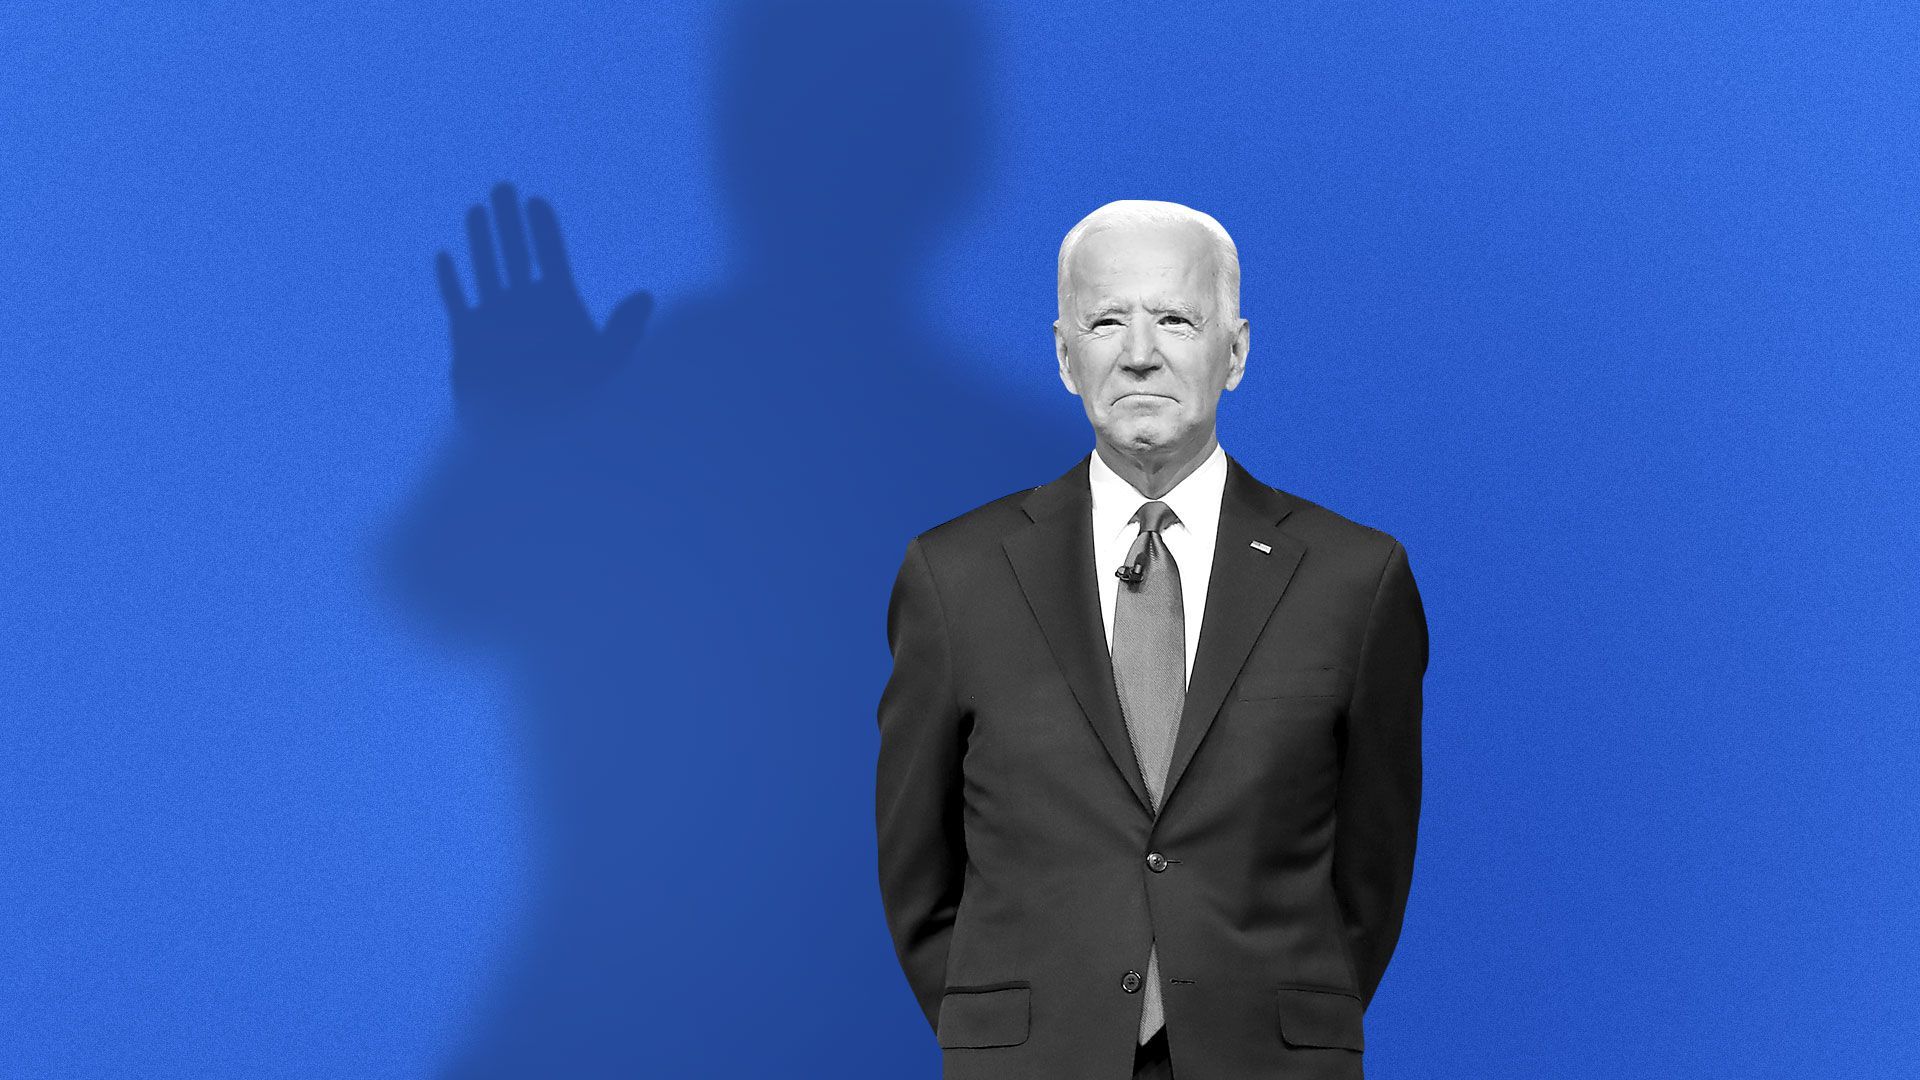 Joe Biden's past comments come back to haunt him